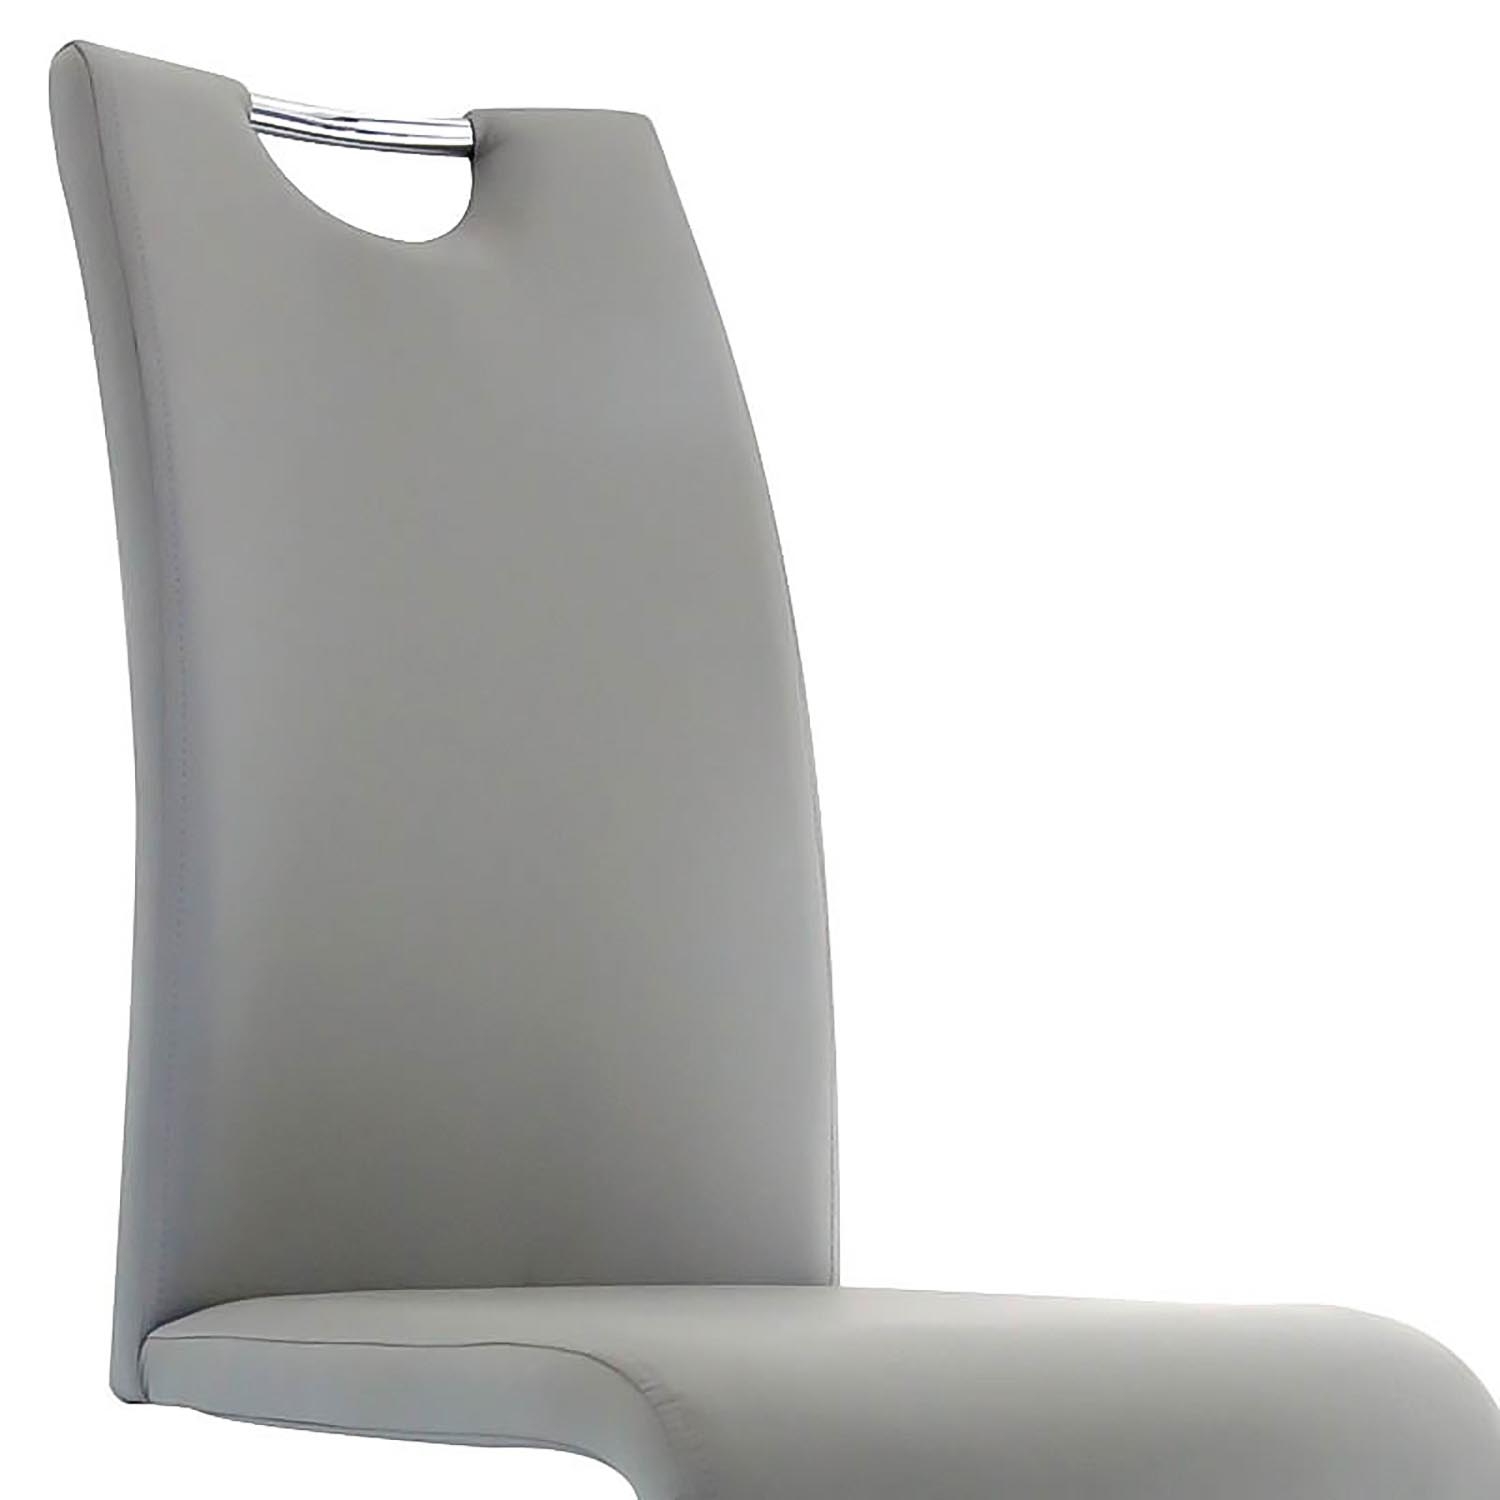 Lot de 2 chaises design en simili cuir gris